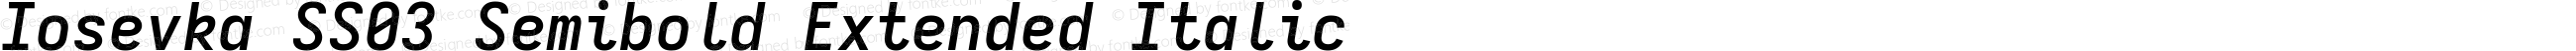 Iosevka SS03 Semibold Extended Italic